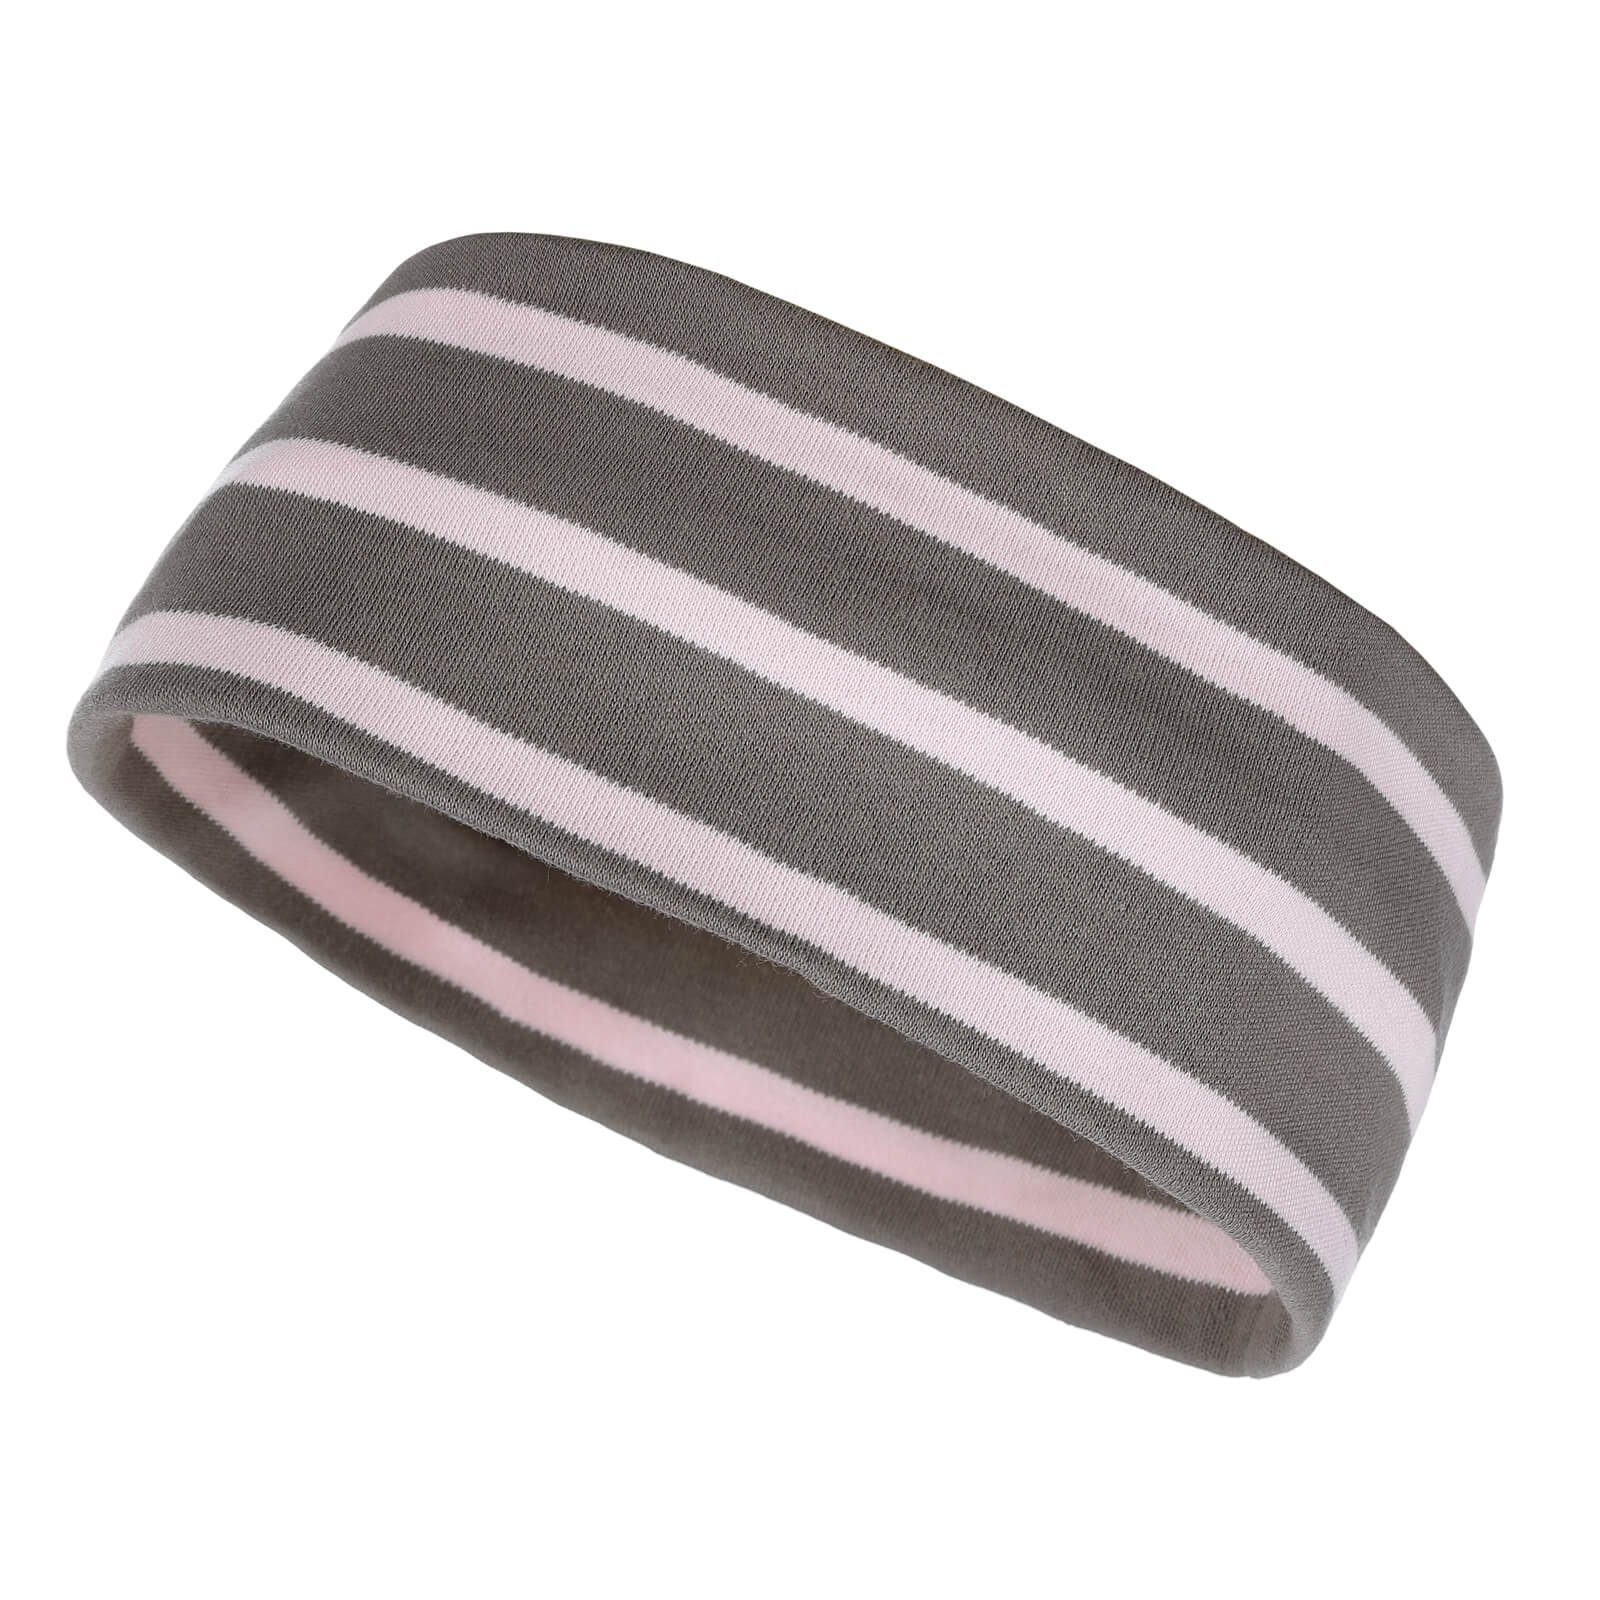 modAS Stirnband Unisex Kopfband Maritim für Kinder und Erwachsene zweilagig Baumwolle (49) taupe / rosa